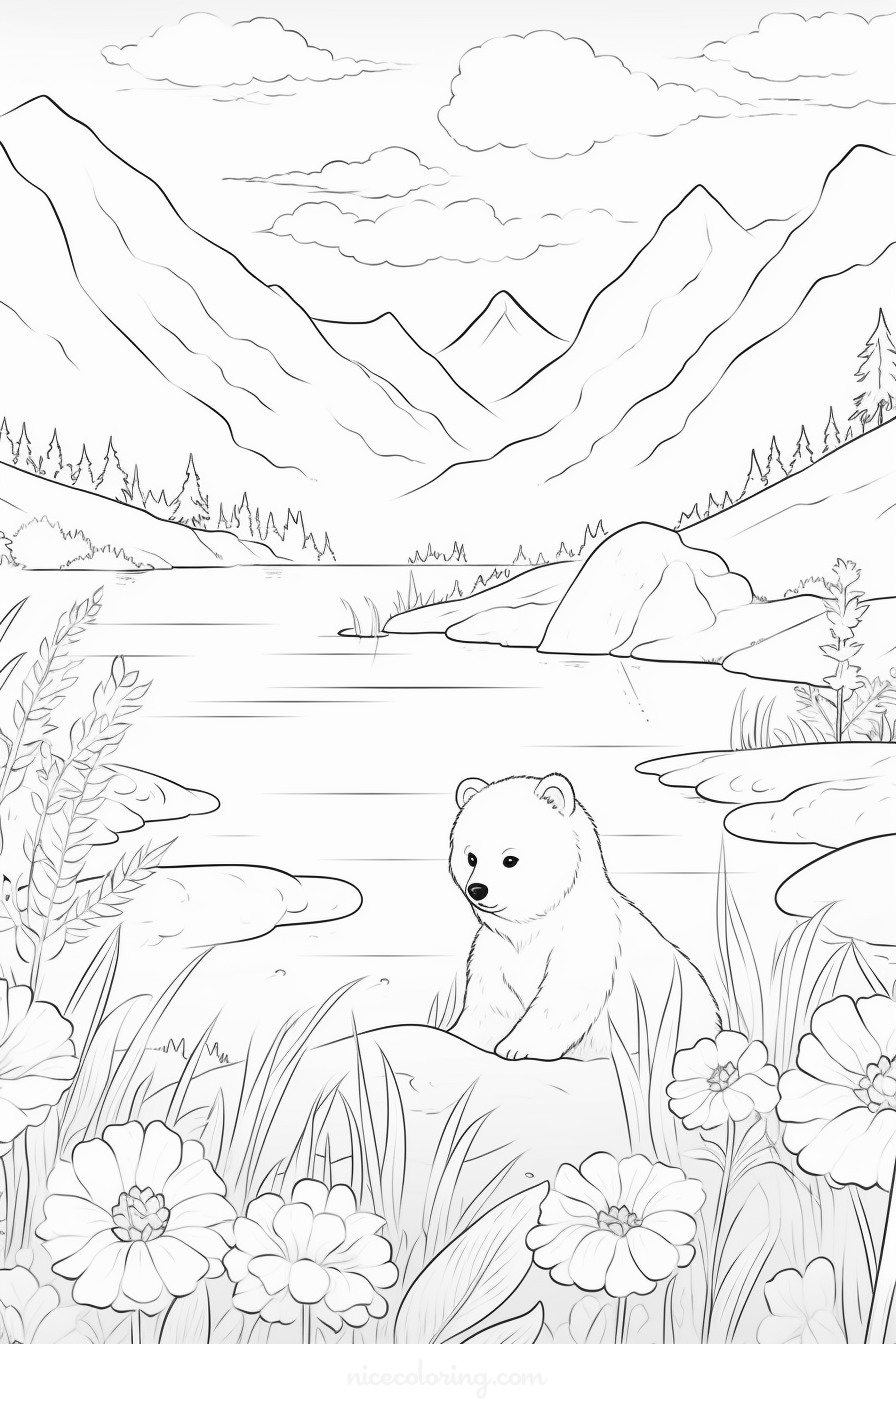 Família de ursos desfrutando de um piquenique numa clareira florestal